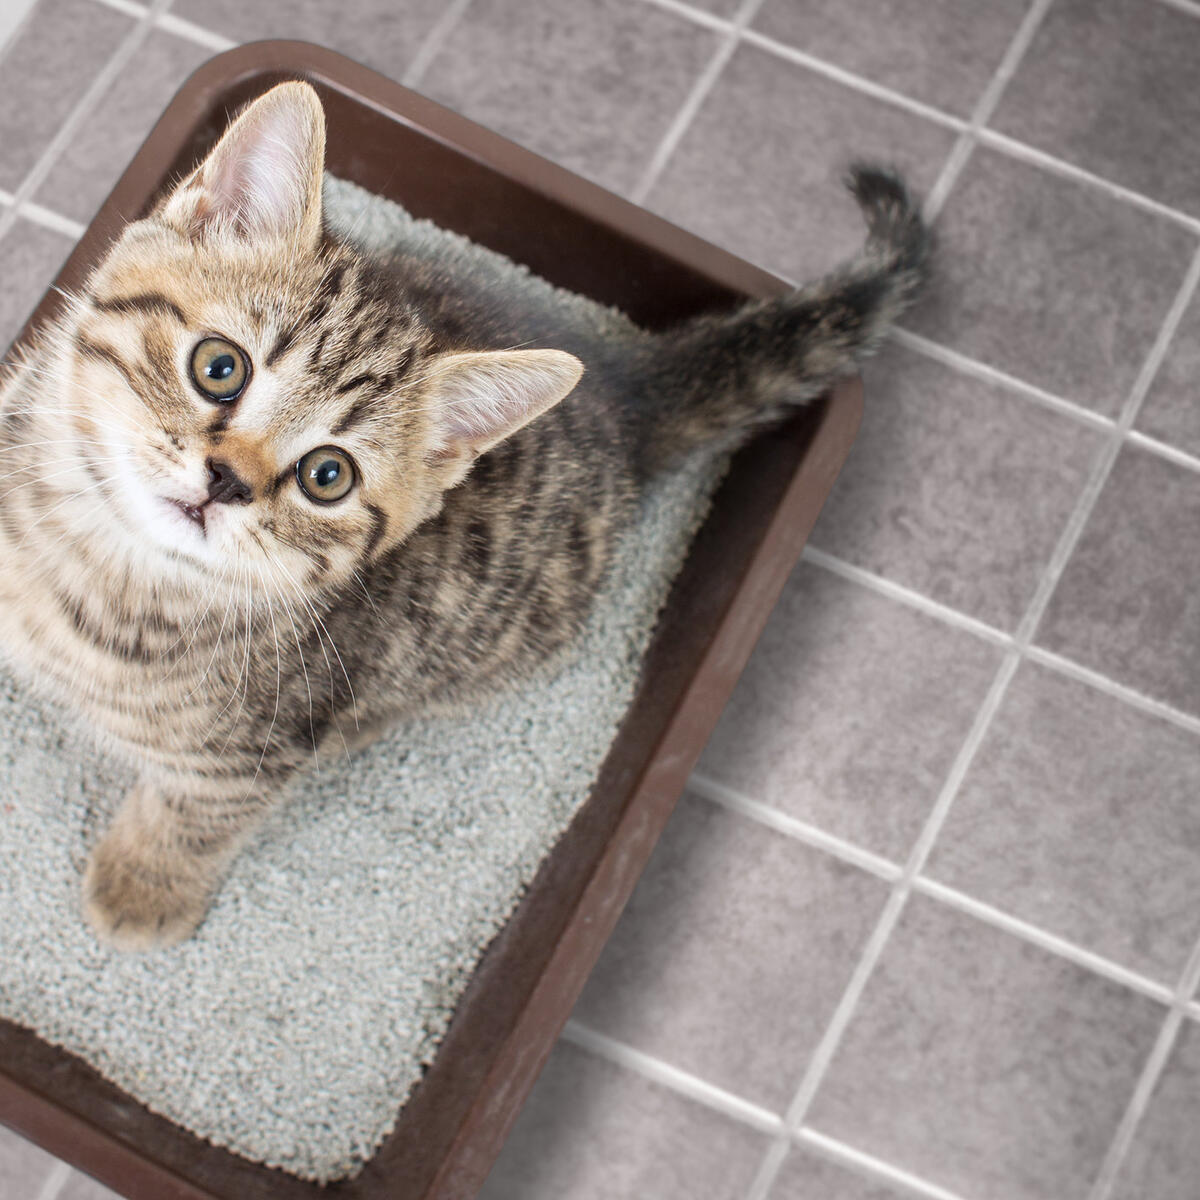 Как приучить бенгальского котенка к лотку быстро если гадит на кровать